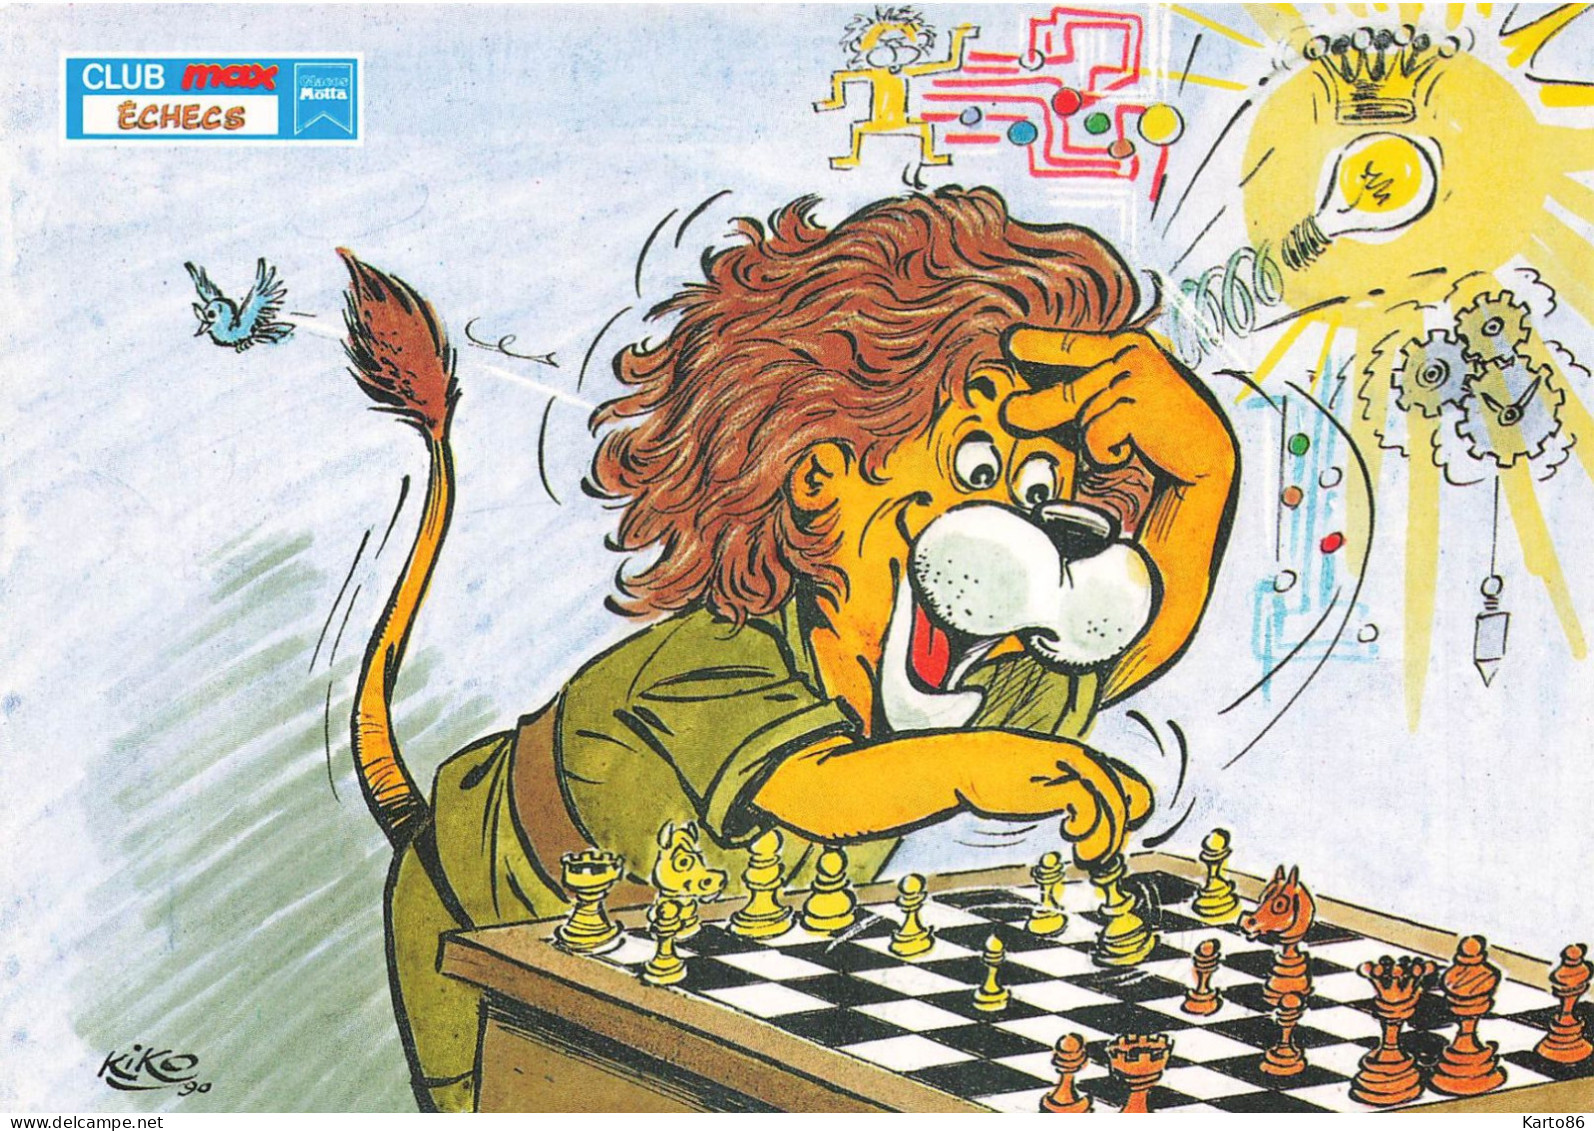 Les échecs , Chess * CPA Illustrateur KIKO Kiko * Club Max ECHECS * Lion Humanisé * Jeu Jeux Game * 1990 - Schach